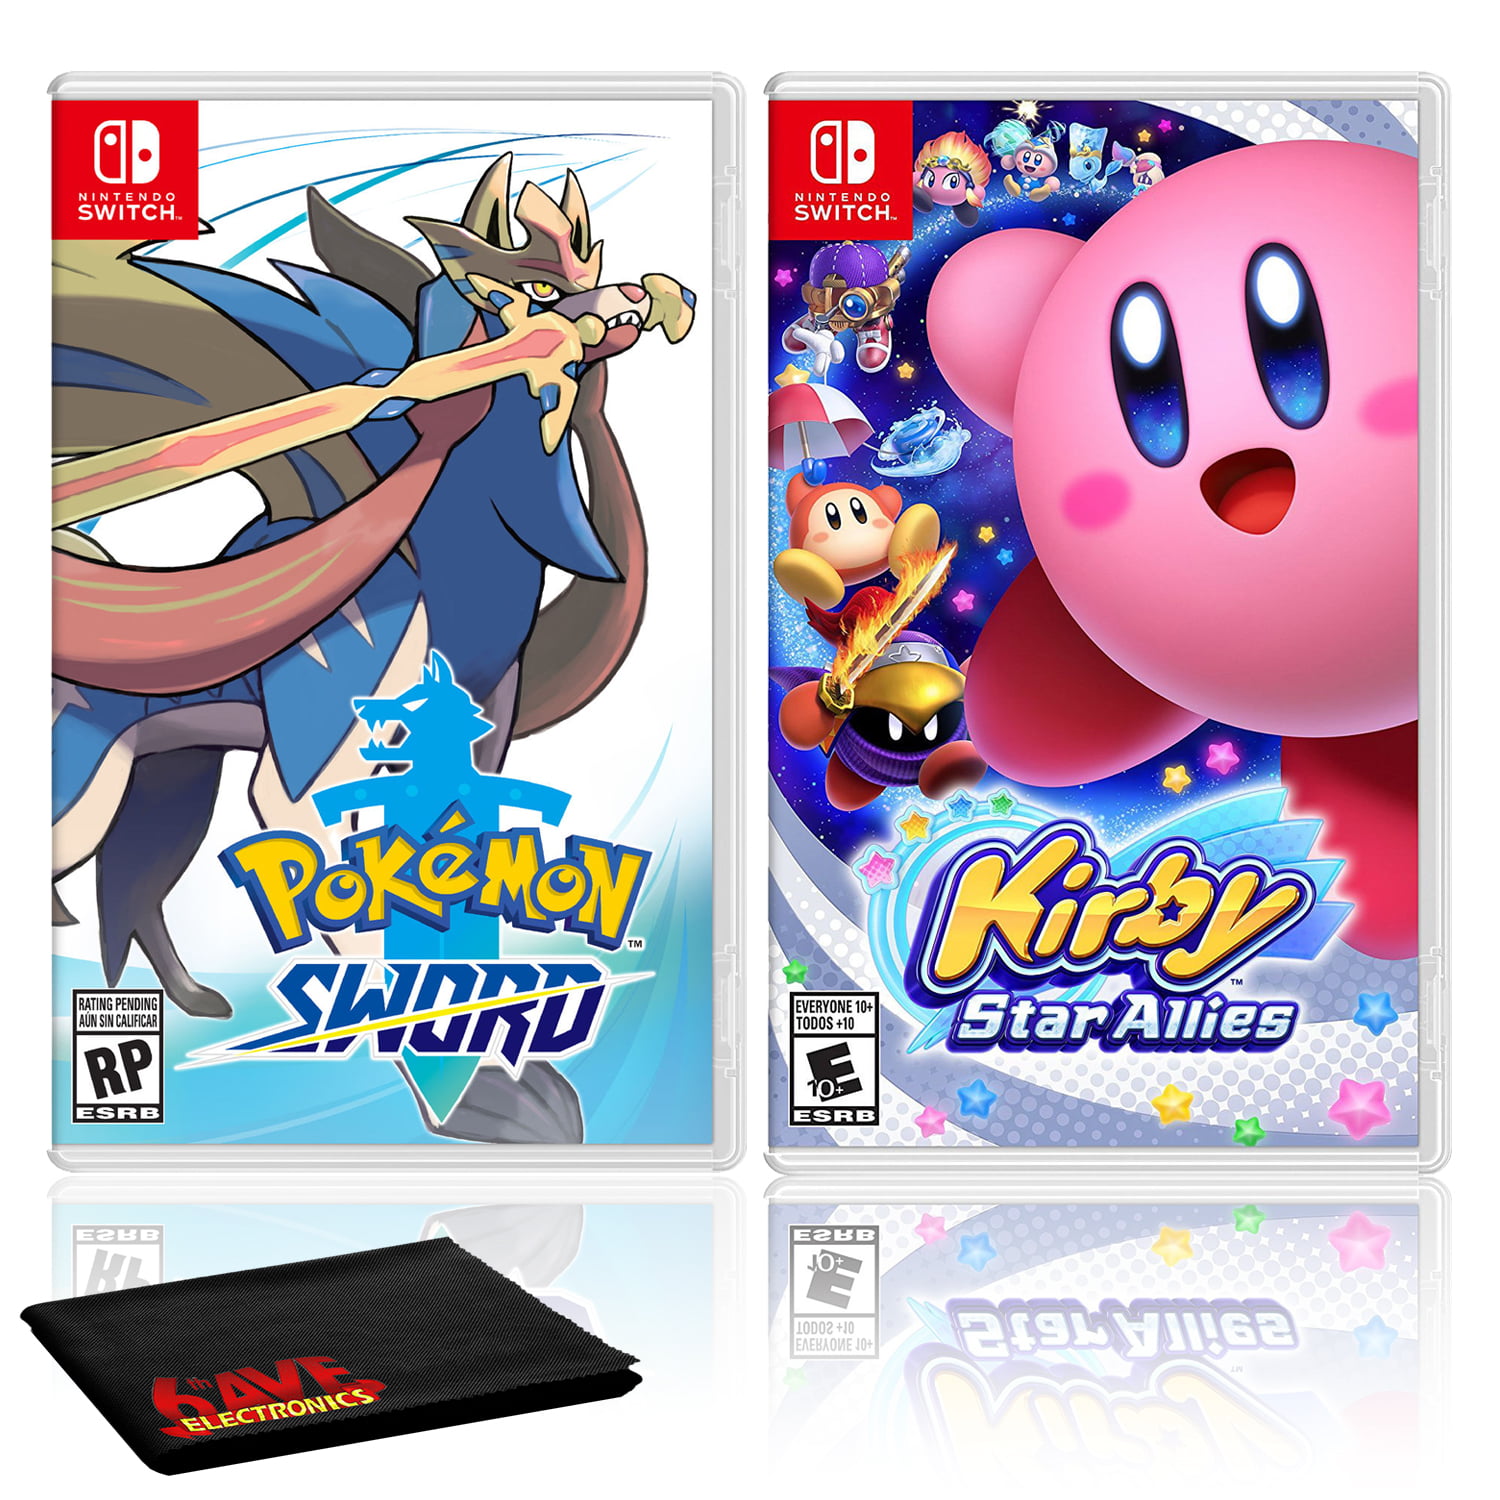 Nintendo Store New York Tour 2018 With Pokemon, Kirby